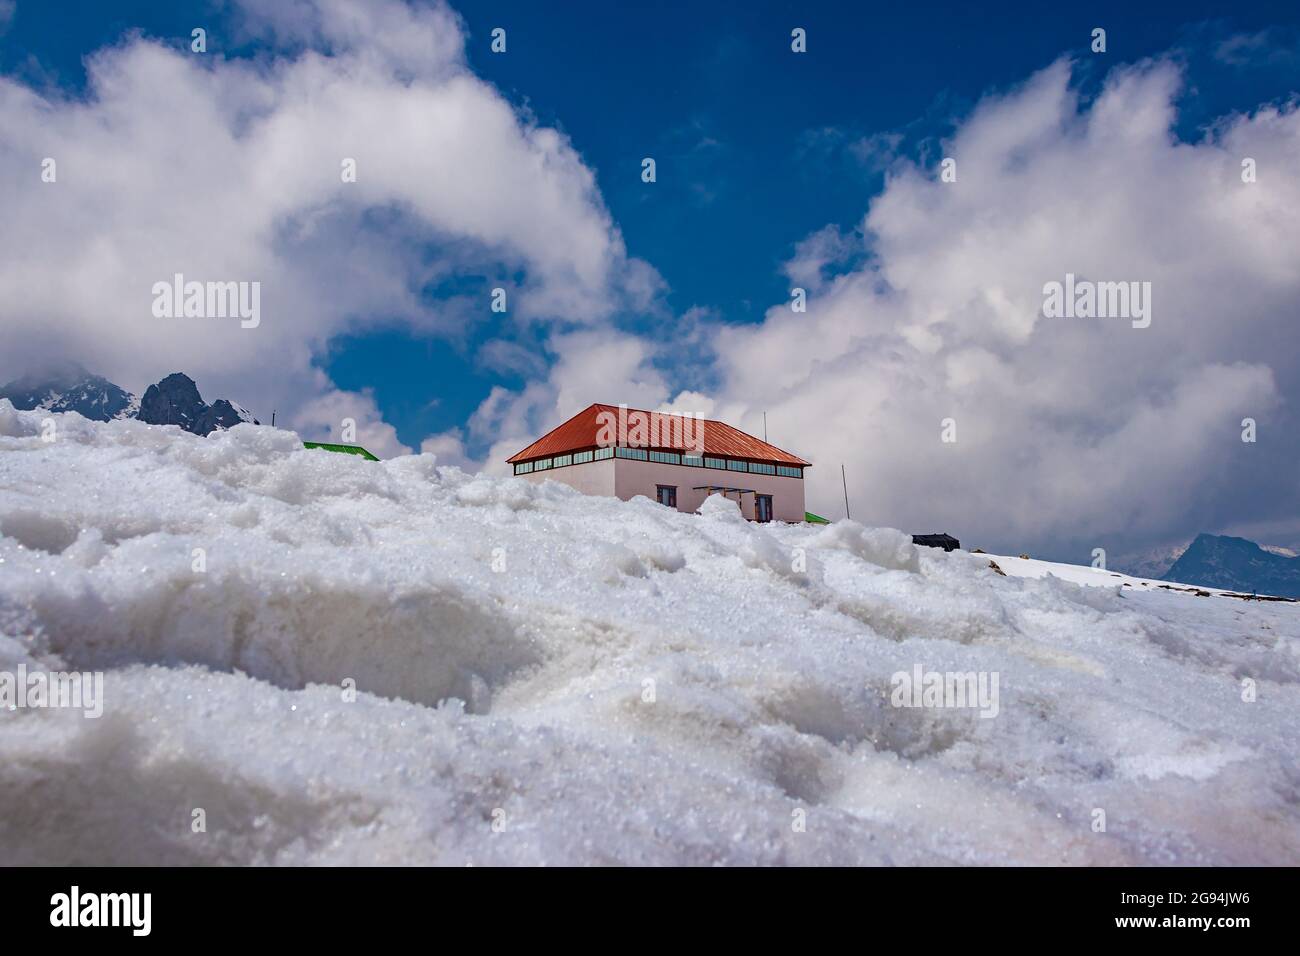 sala de conferencias del paso de bumla india china frontera internacional cubierta de nieve en el día la imagen se toma en el paso de bumla arunachal pradesh india. Foto de stock